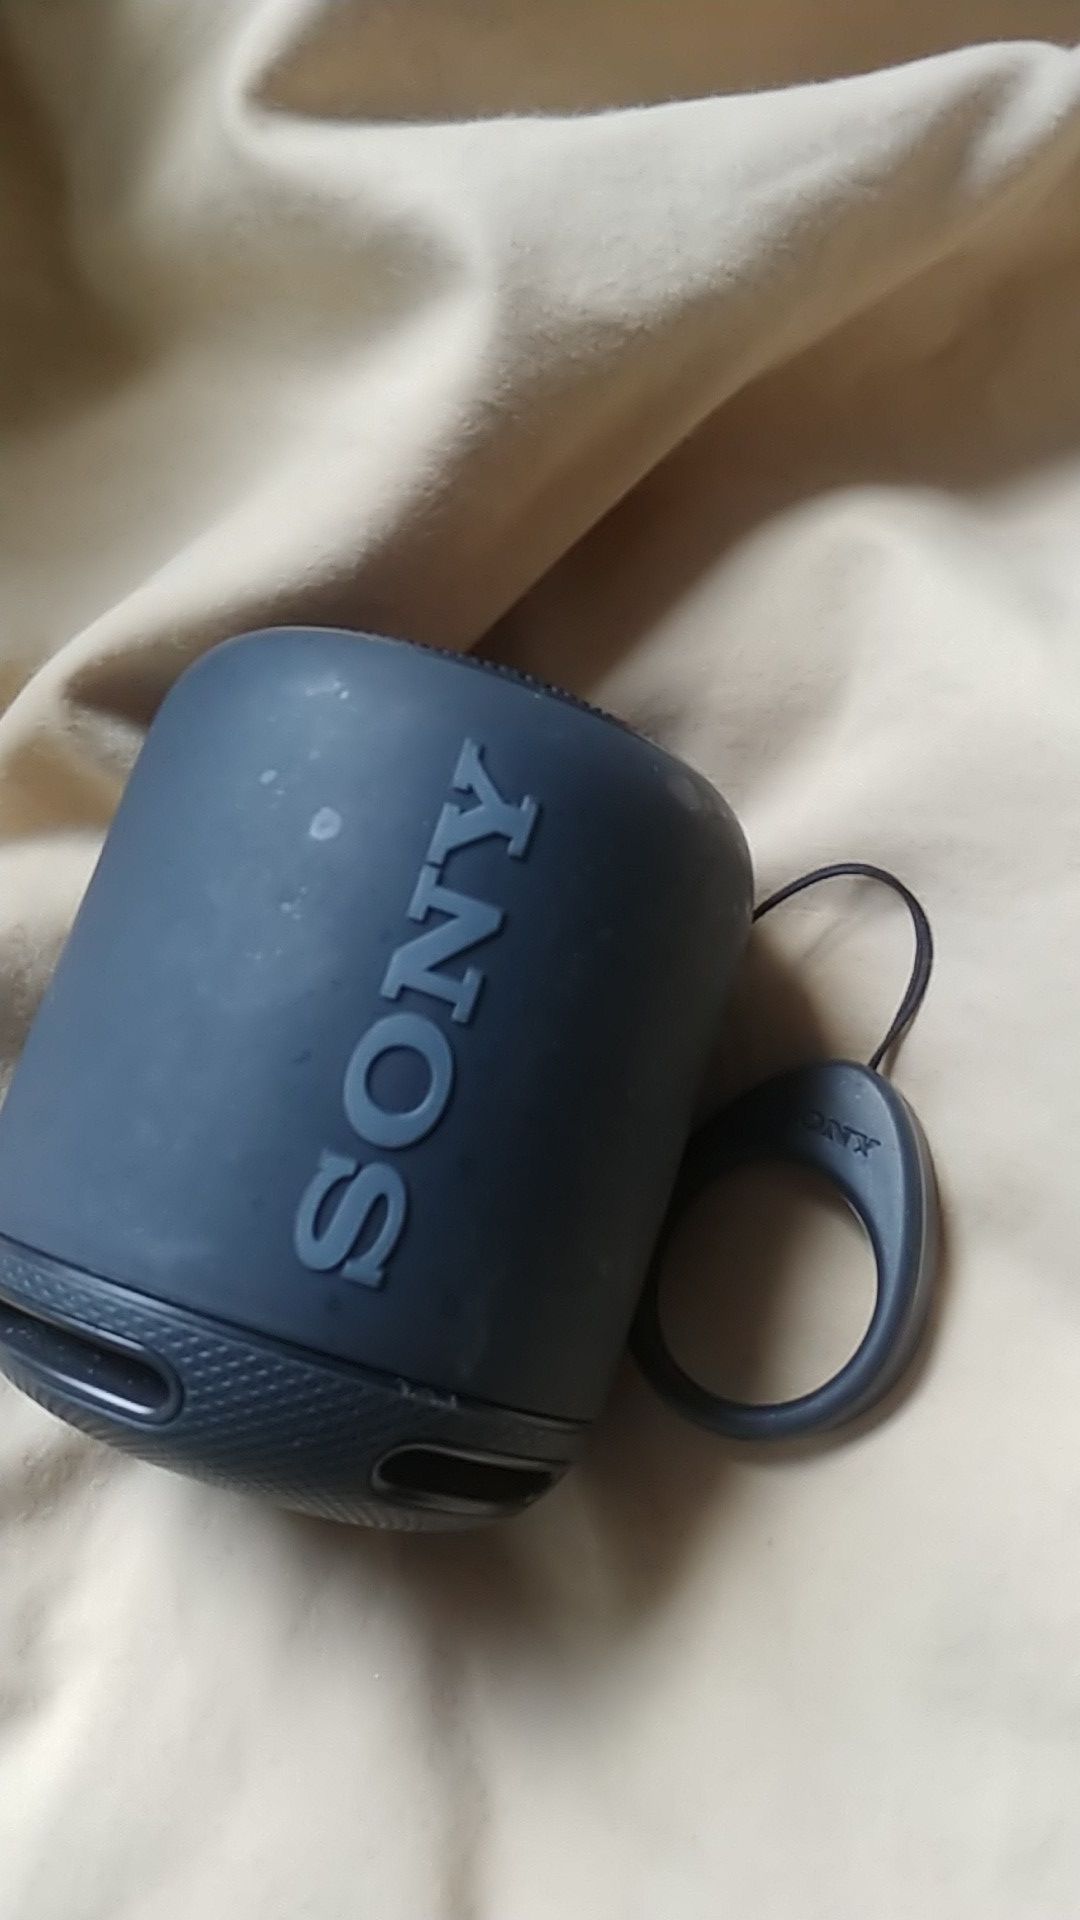 Sony mini speaker with sub